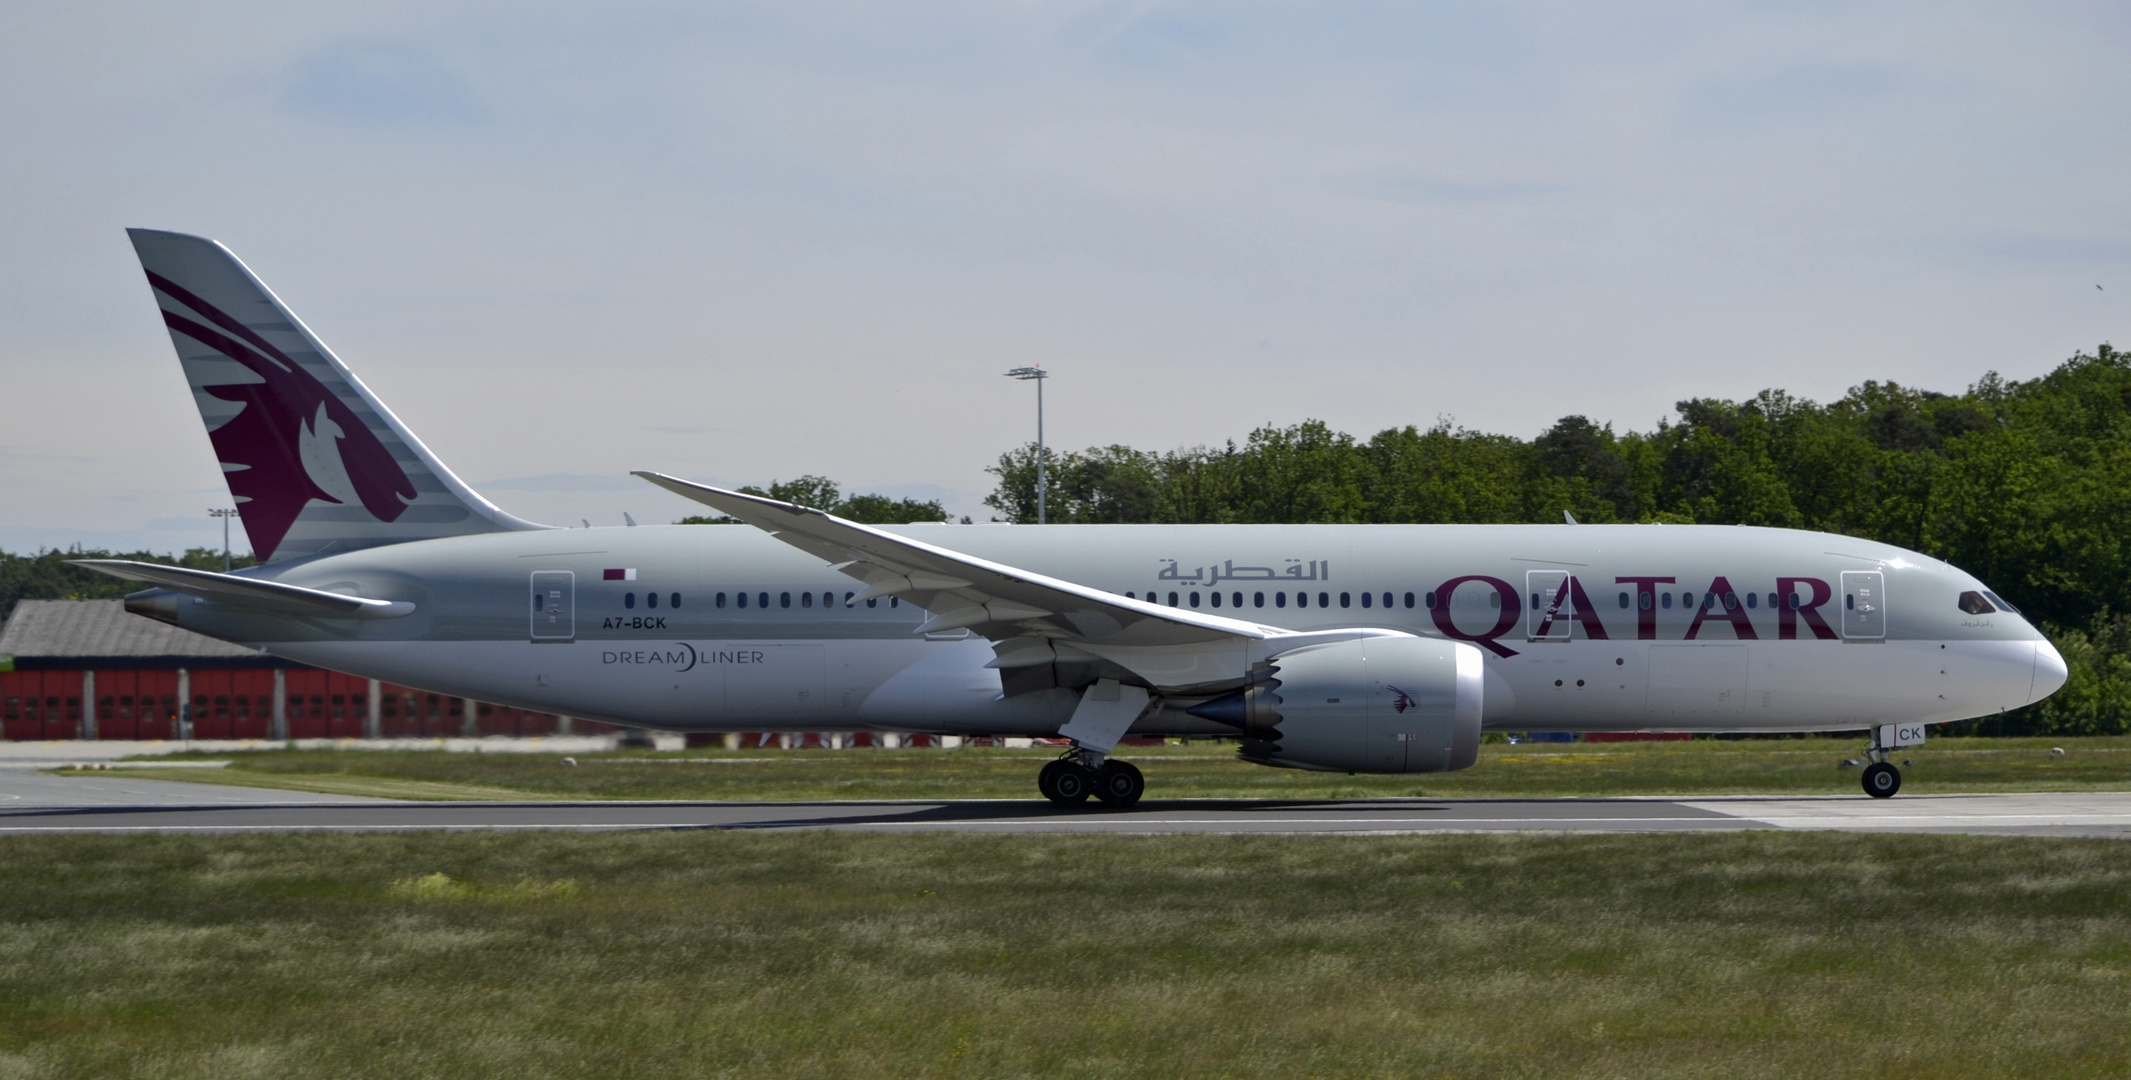 Qatar Boeing 787